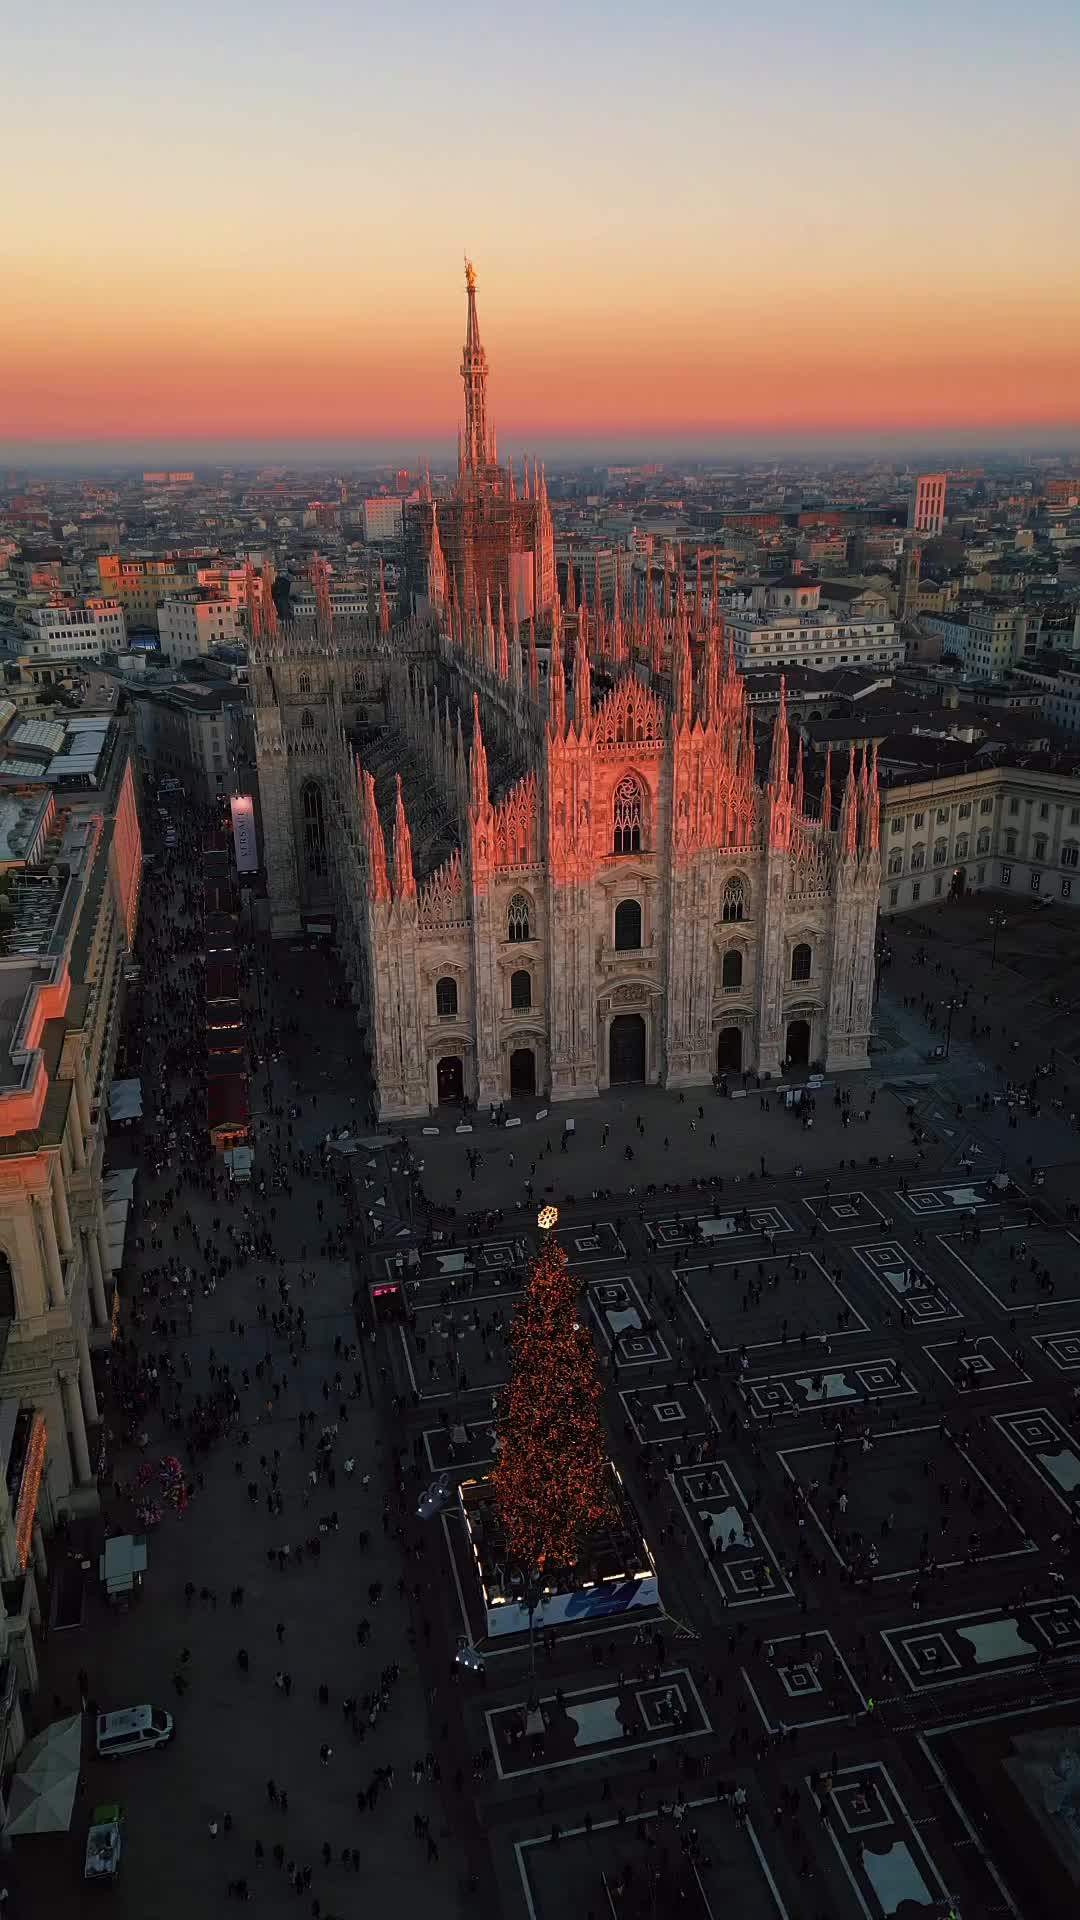 Why I Still Love Milan - Duomo di Milano at Sunset